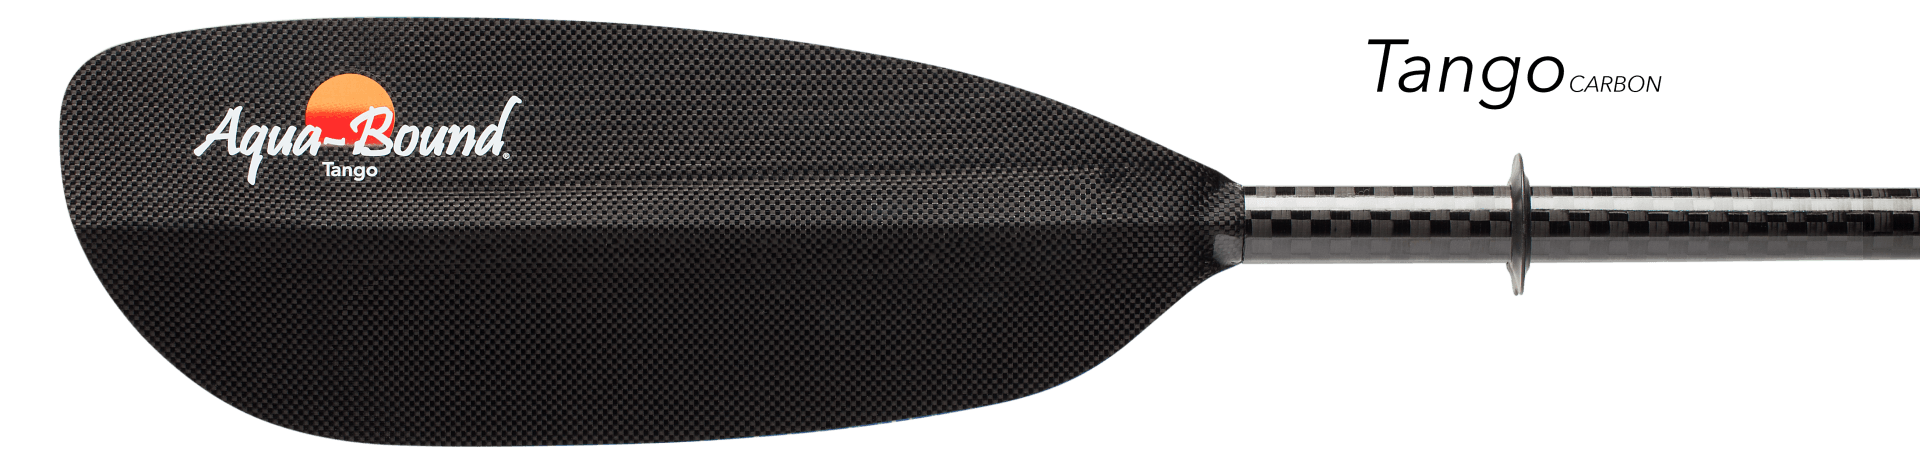 aqua-bound tango carbon paddle